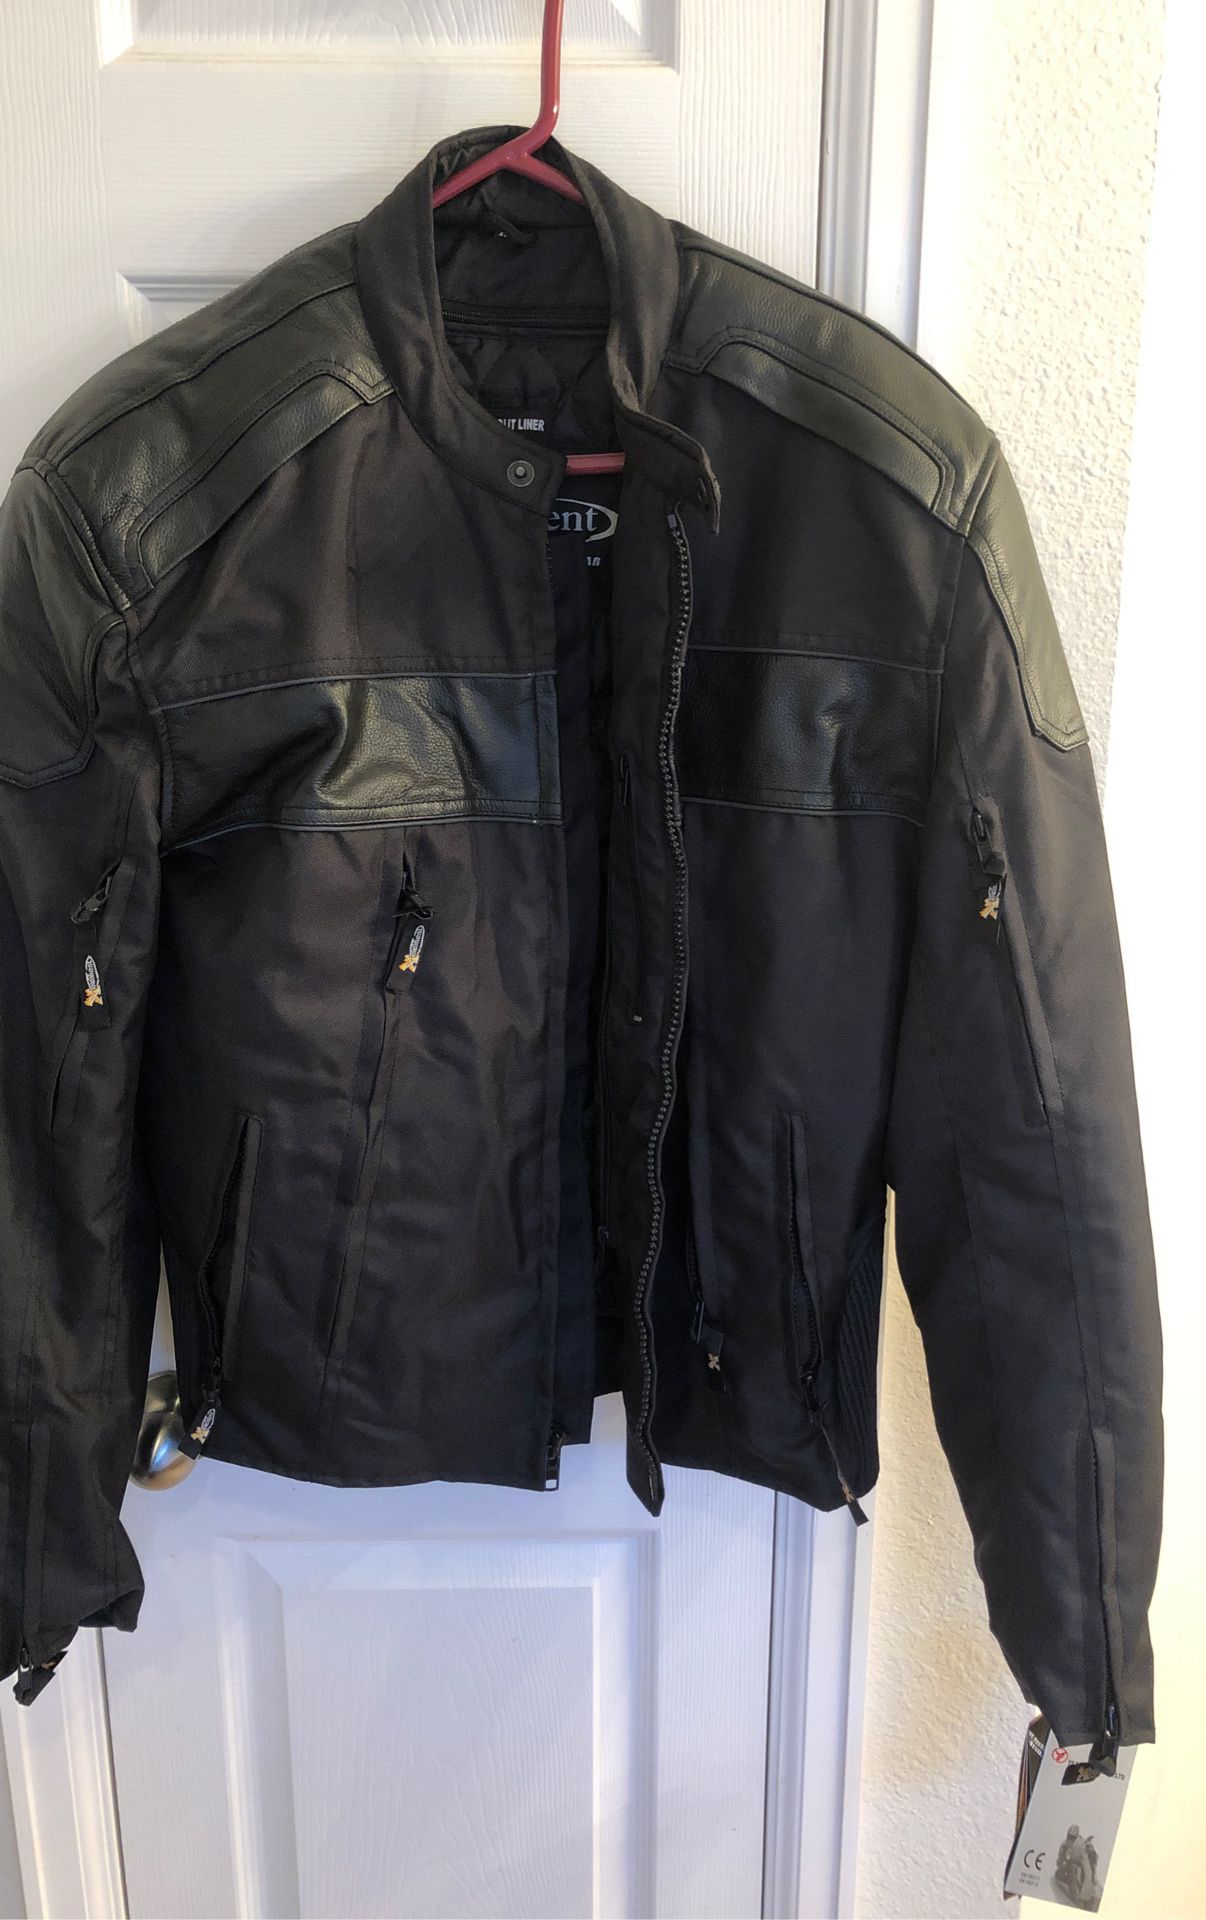 Men’s XL Xelement Black motorcycle jacket